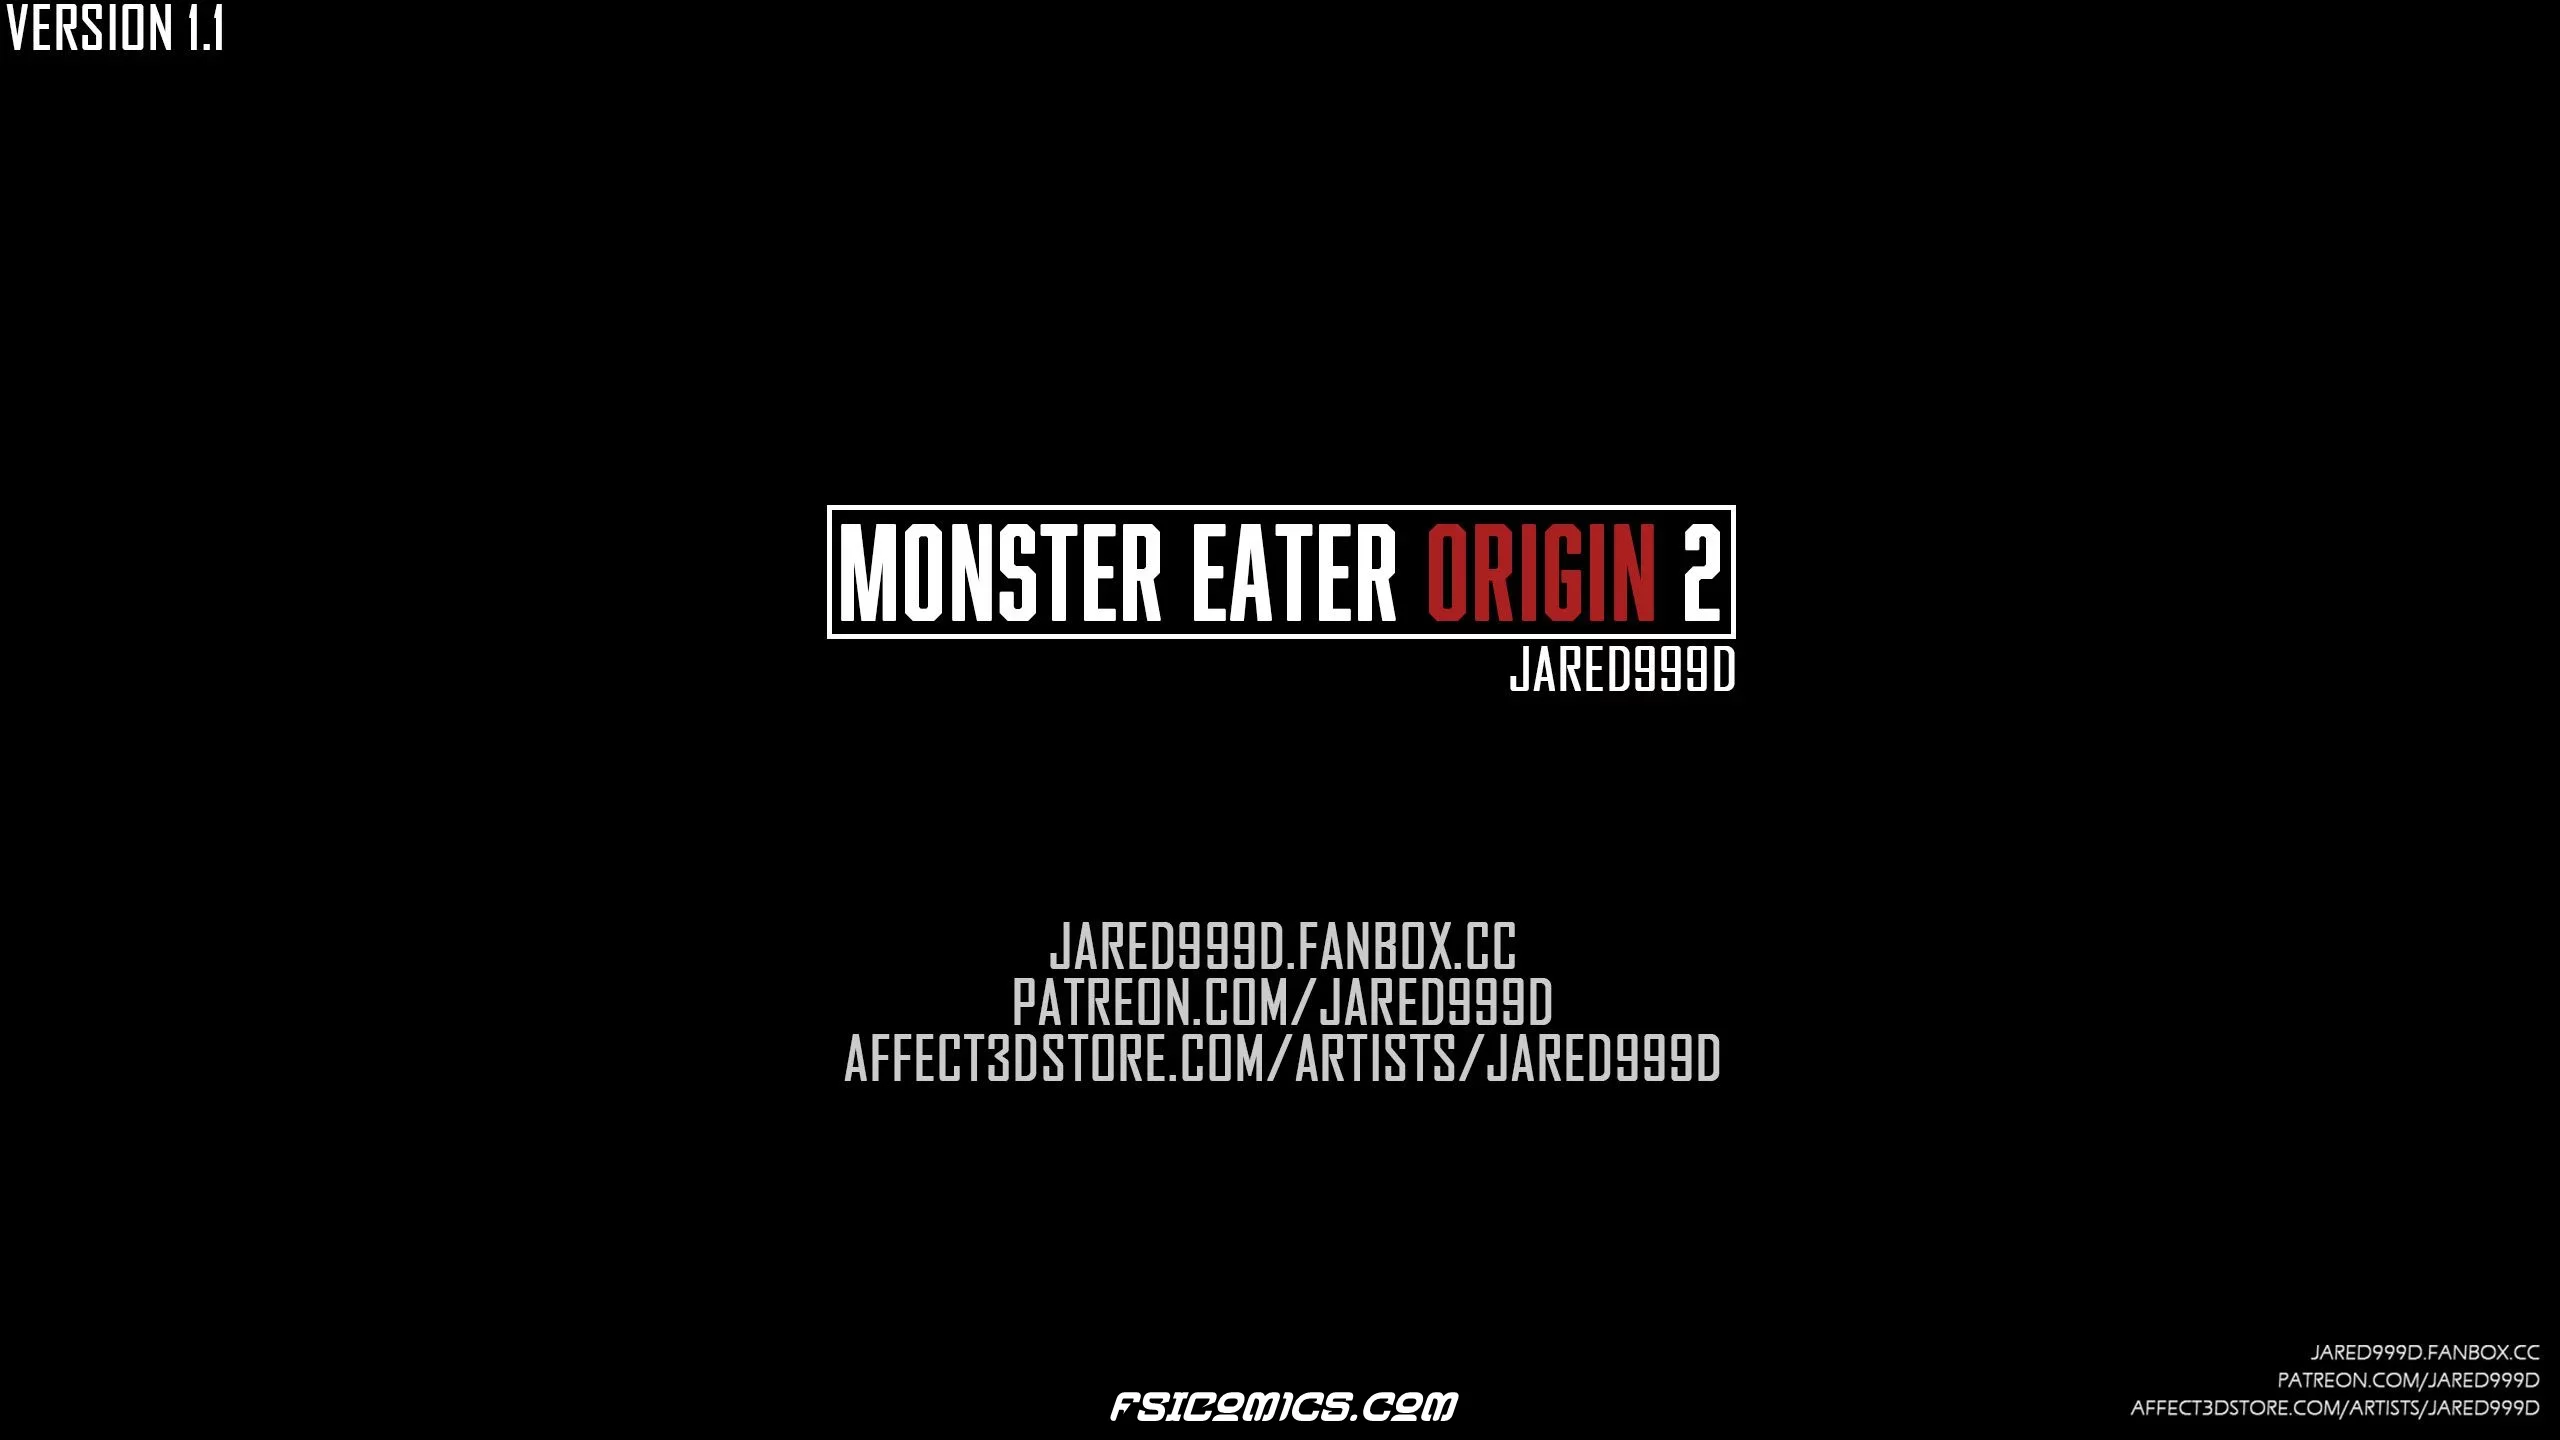 Monster Eater Origins Chapter 2 - Jared999D - 39 - FSIComics